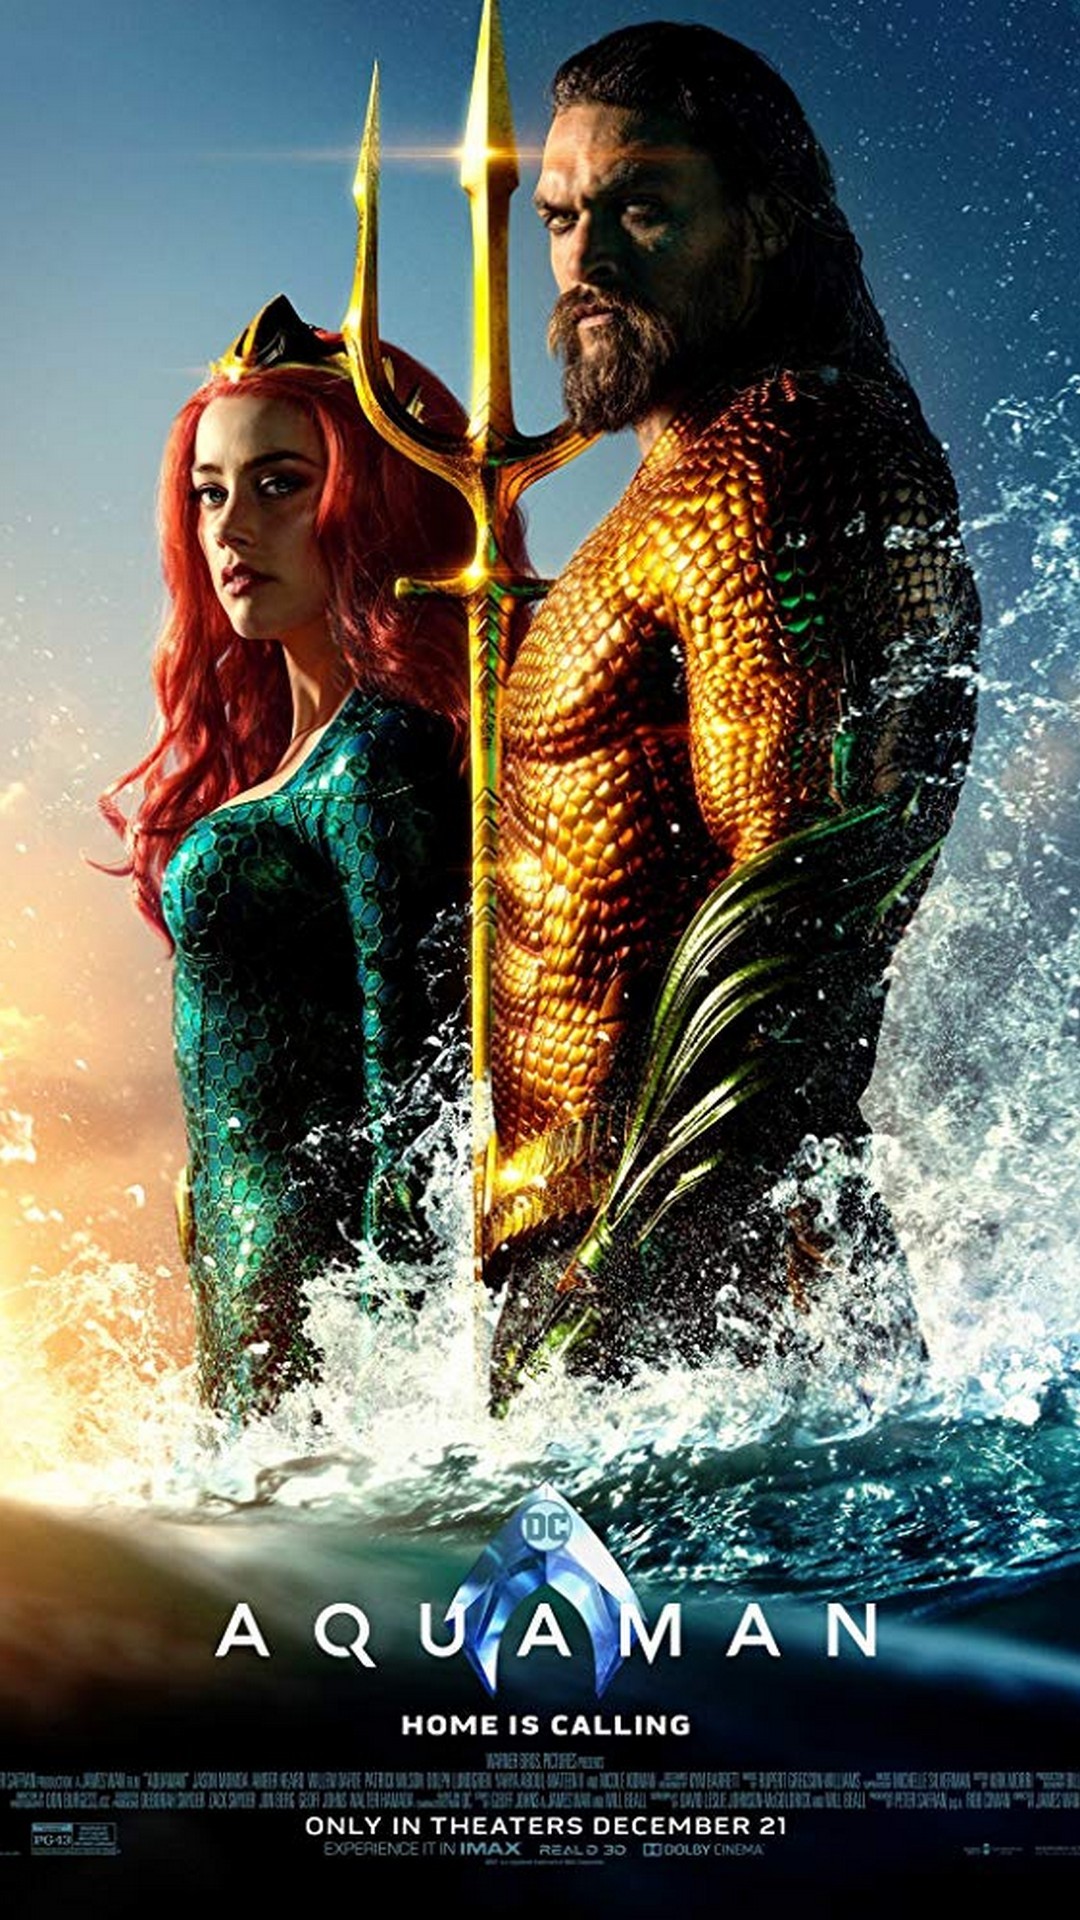 Aquaman Poster Hd With Resolution Pixel - Aquaman 2018 Poster - HD Wallpaper 